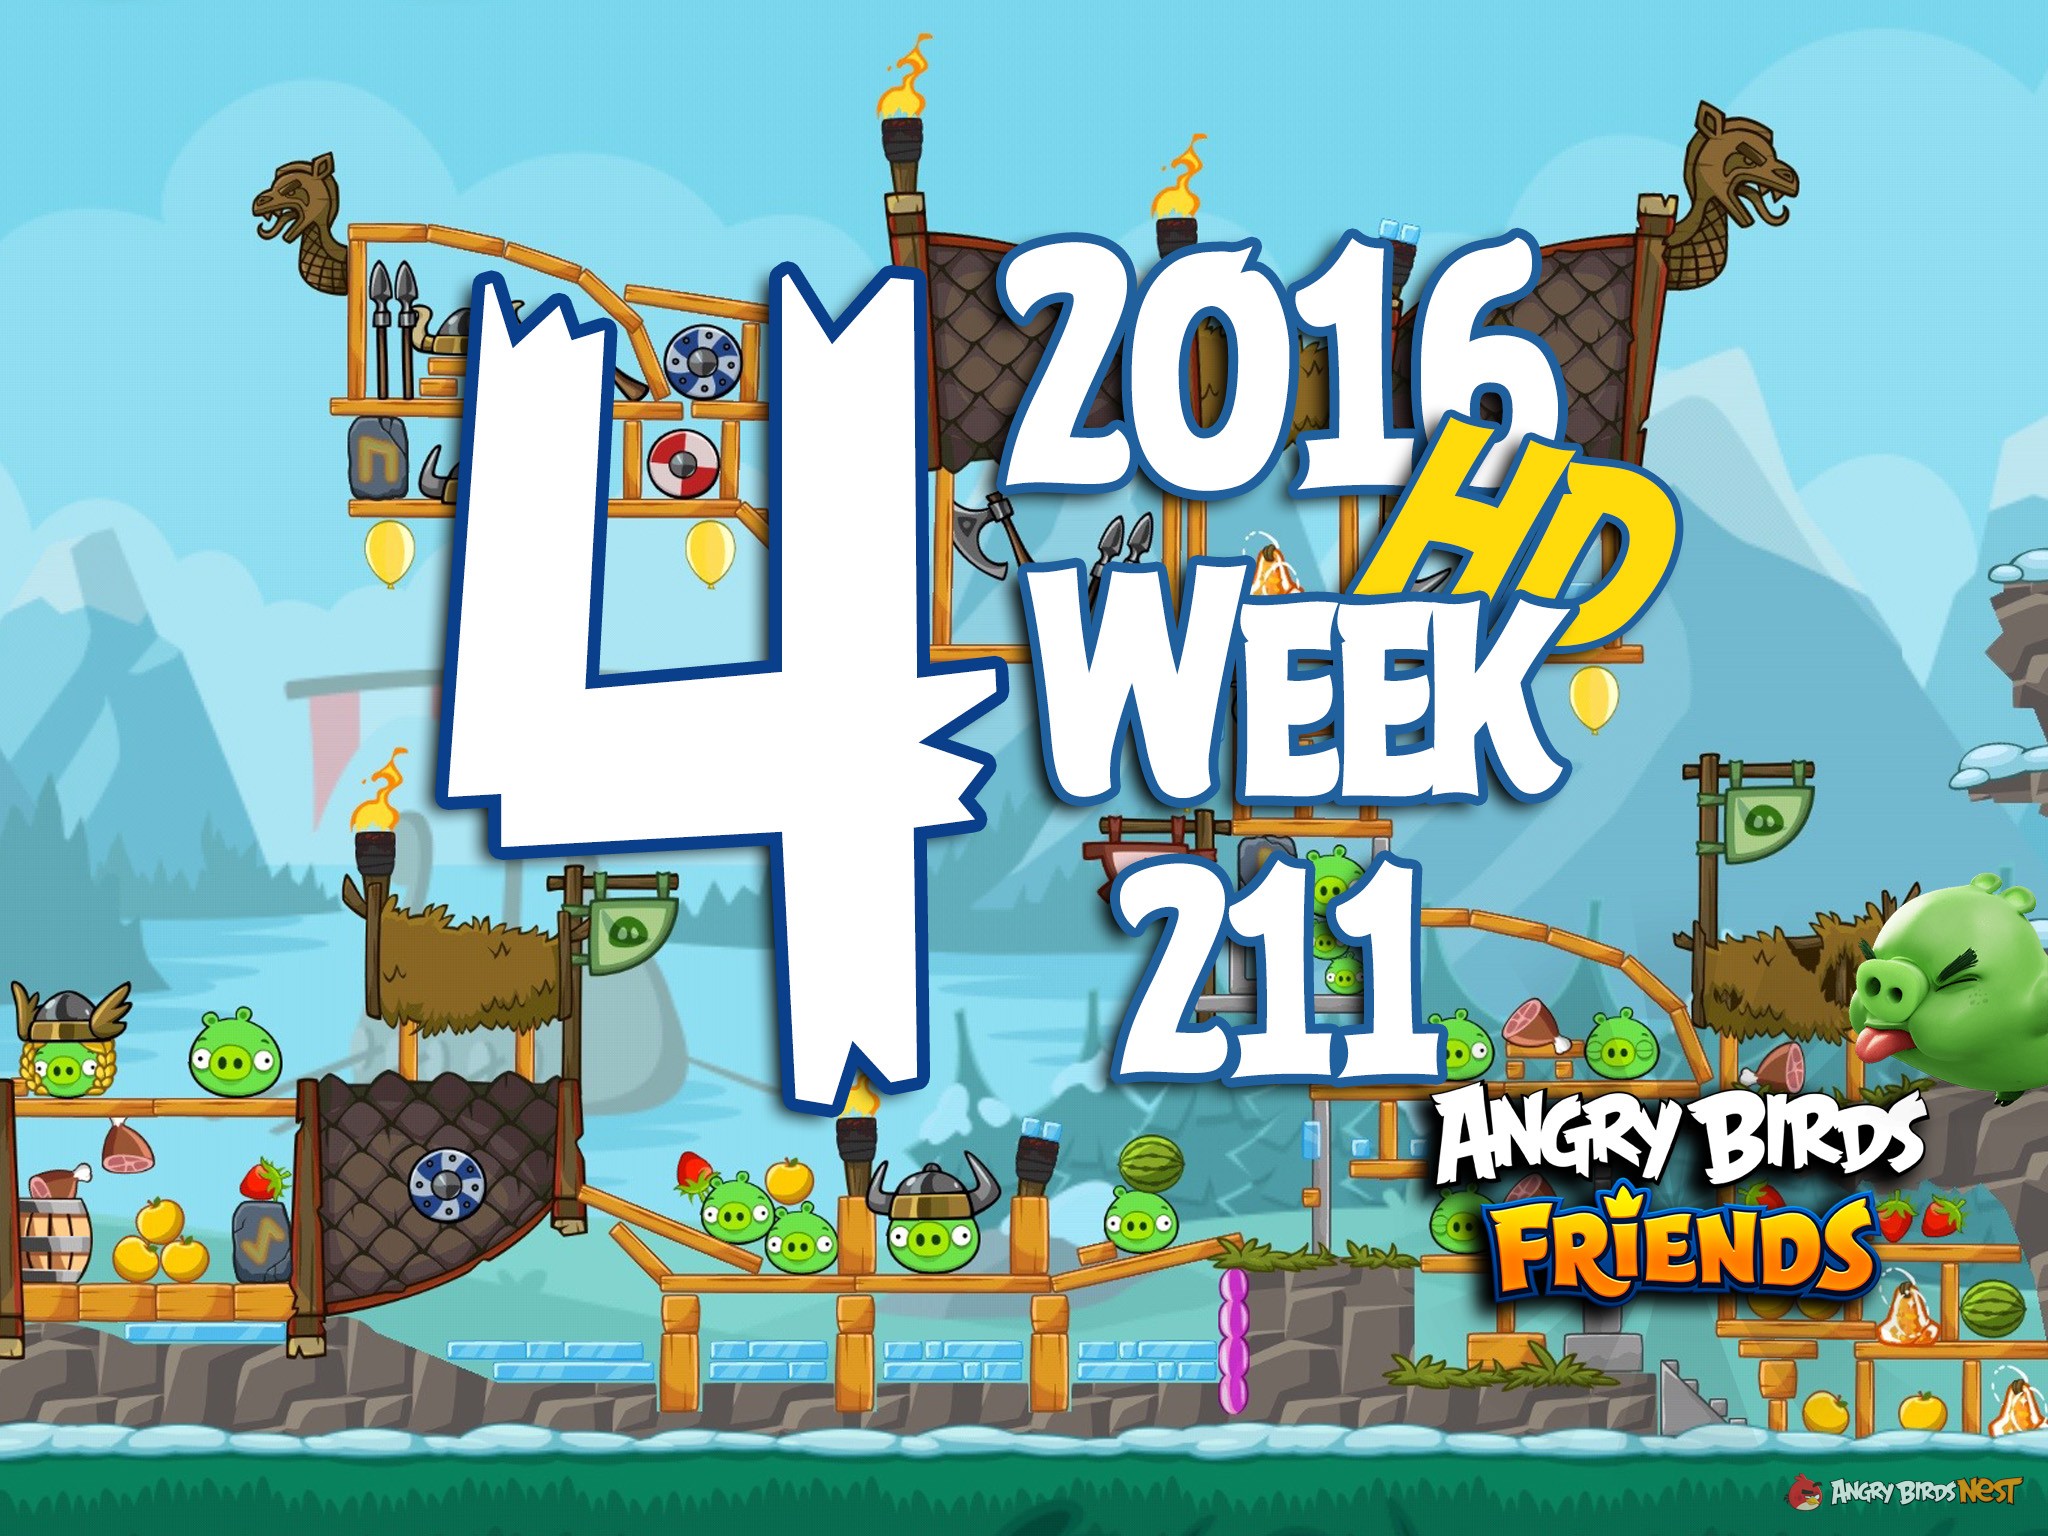 Angry Birds Friends Tournament Level 4 Week 211 Walkthrough | 2016